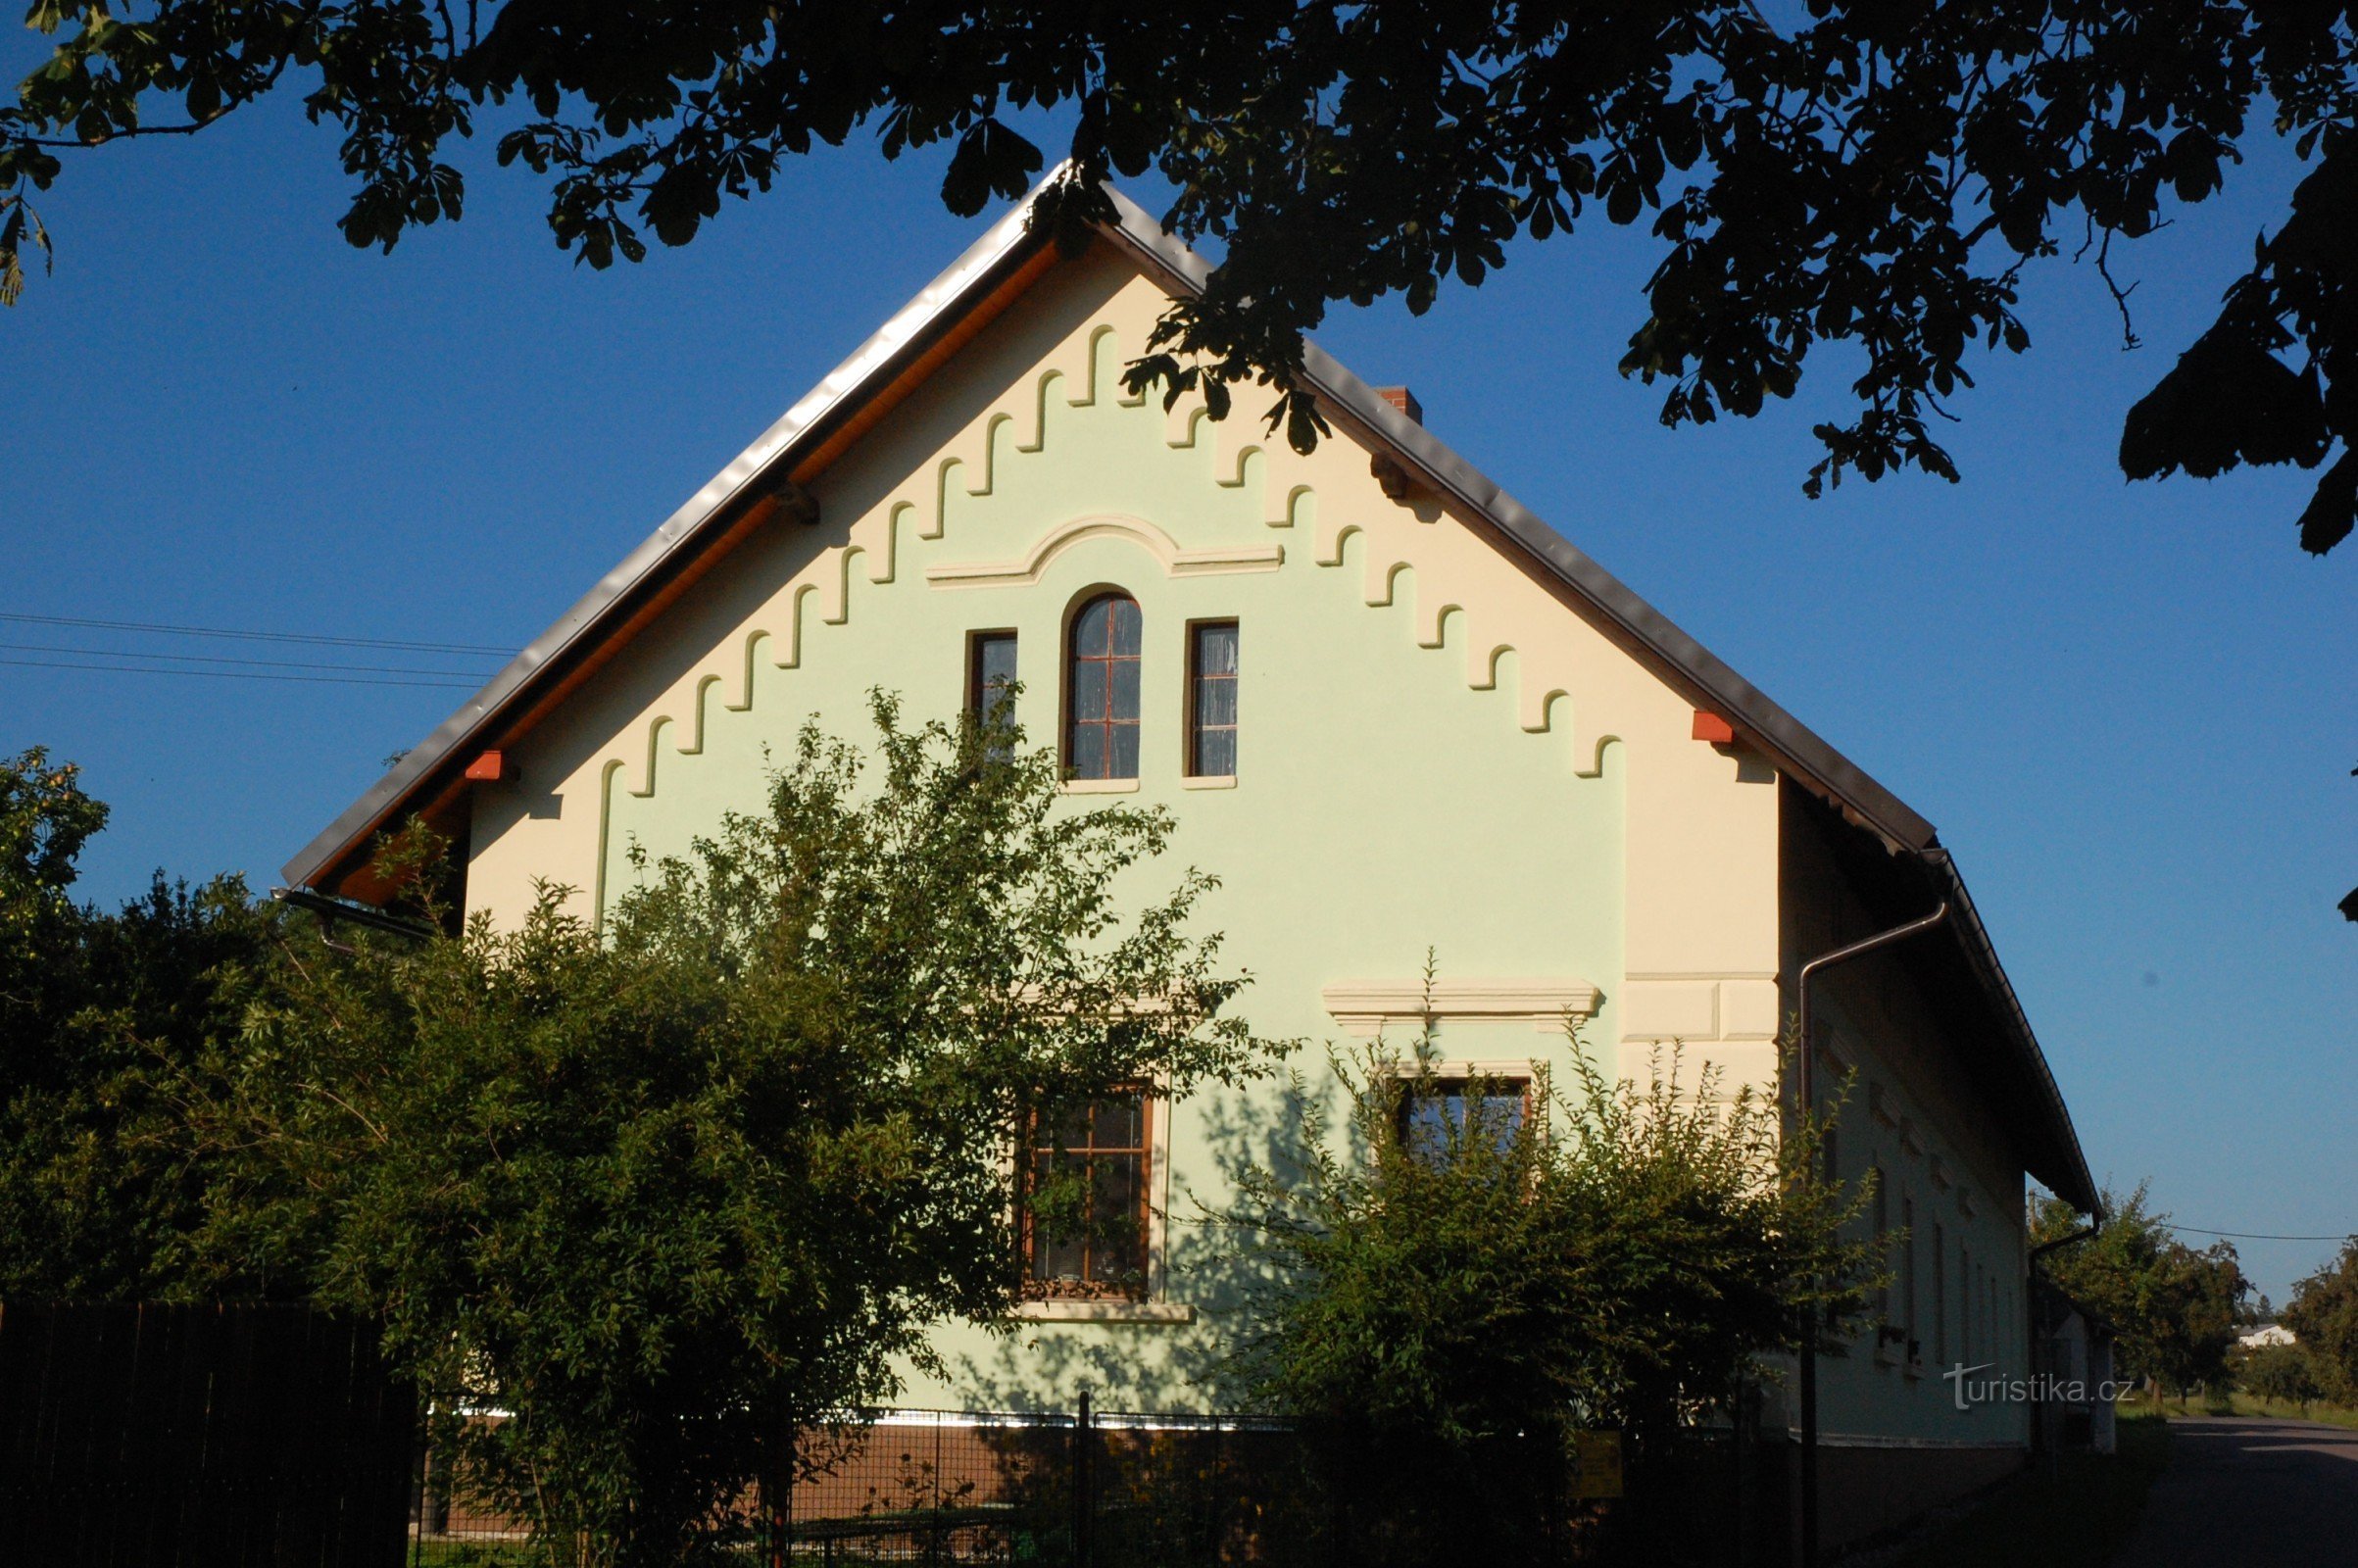 The facade of the farmhouse